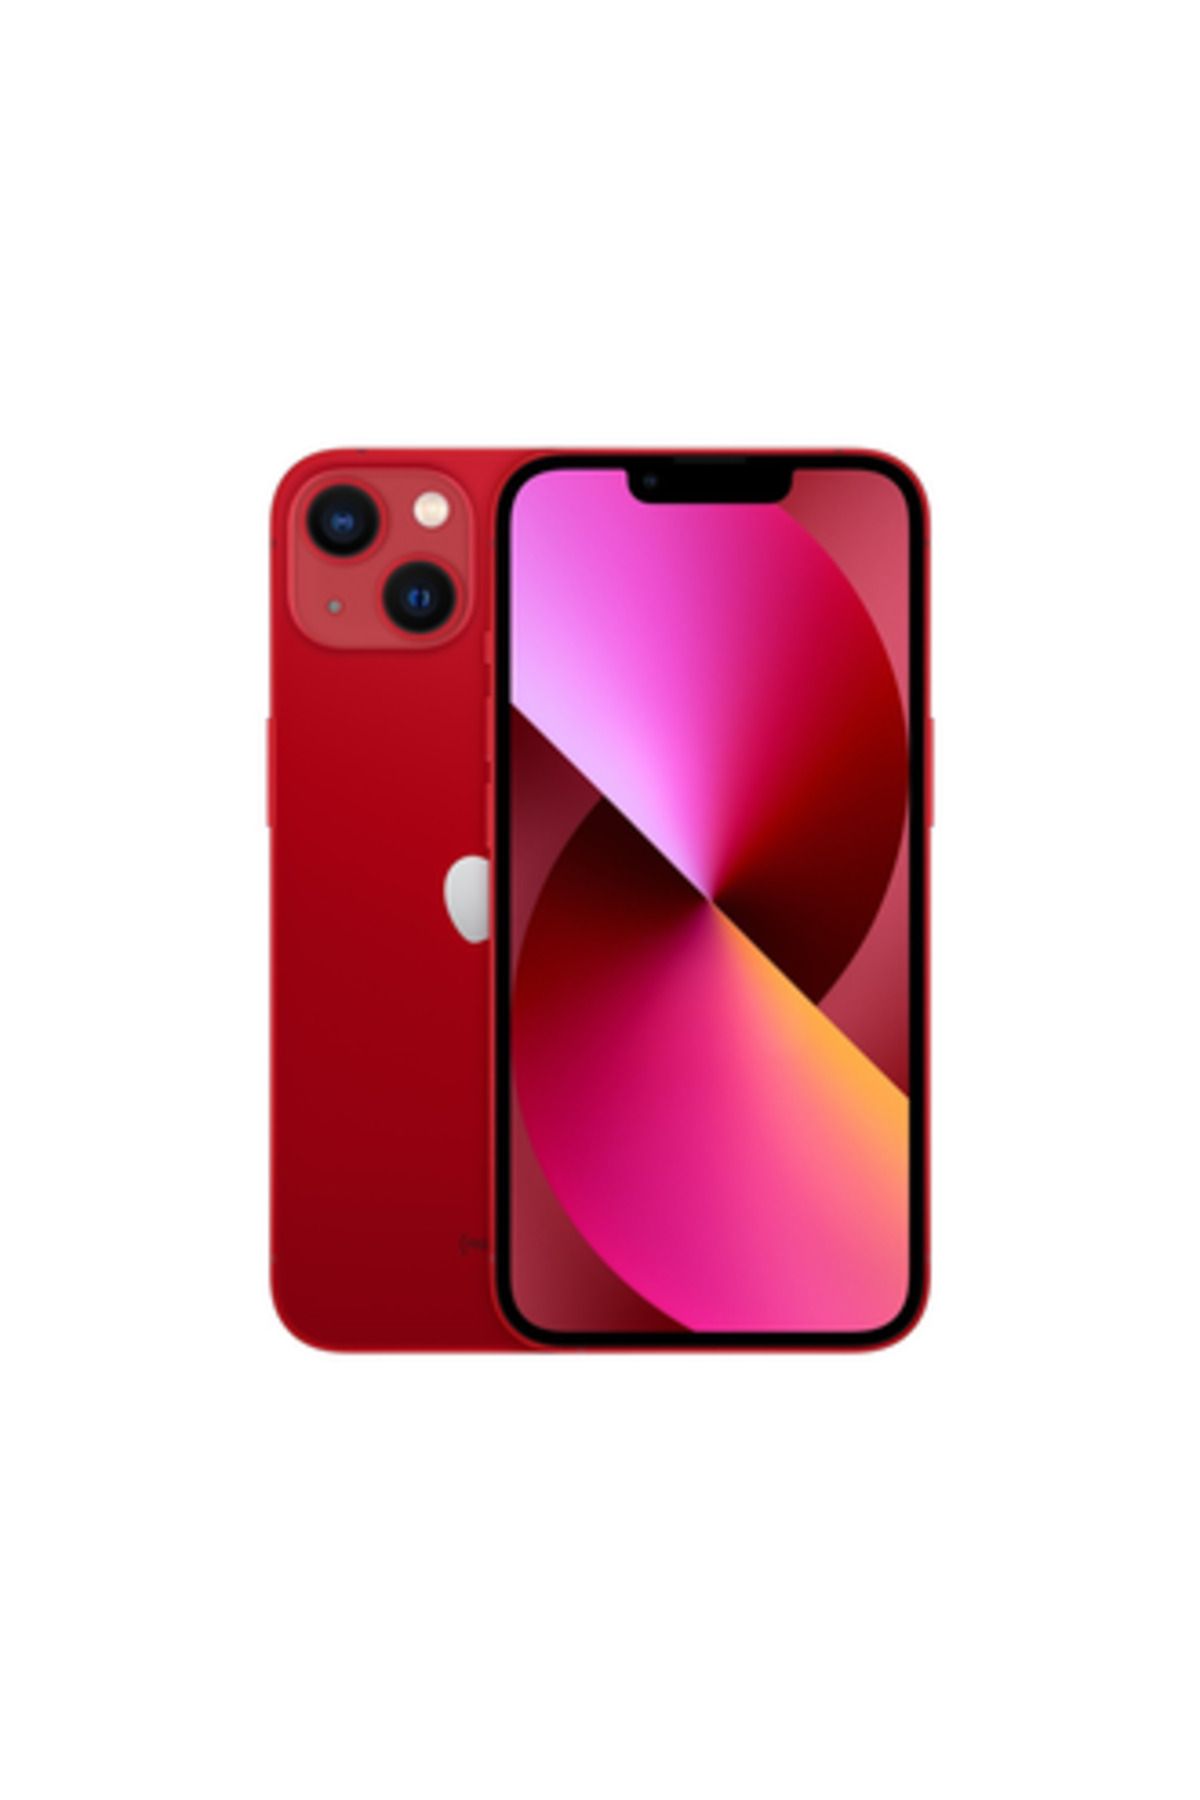 Apple iPhone 13 256 GB (PRODUCT)RED Cep Telefonu (Apple Türkiye Garantili)